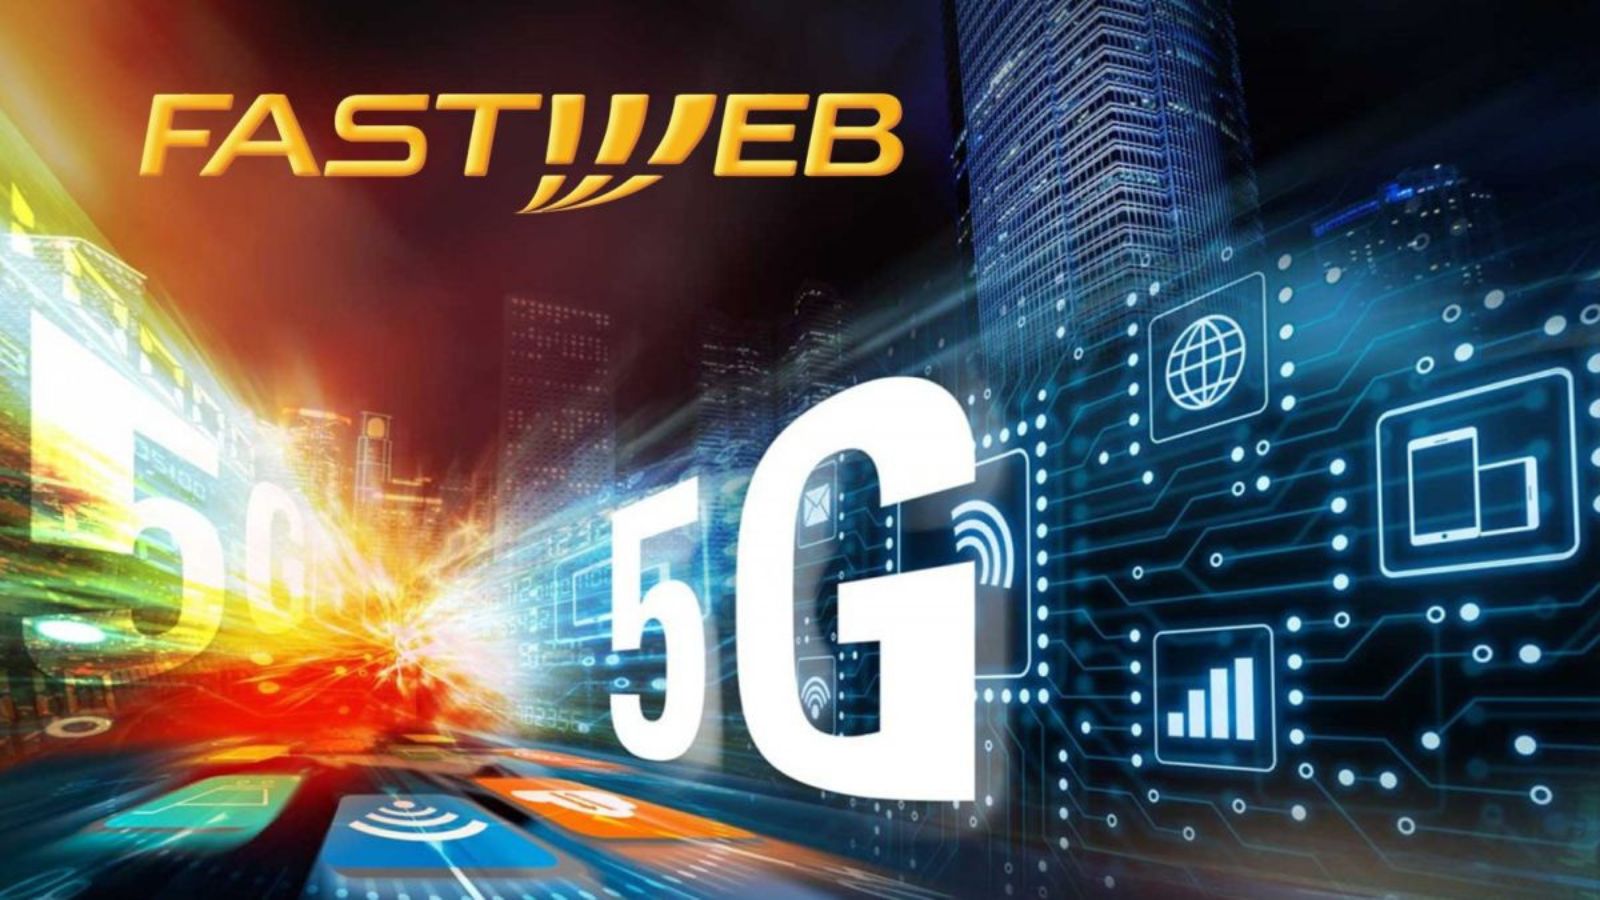 Fastweb in 5G, l'offerta piena di giga GRATIS 3 mesi: ecco come